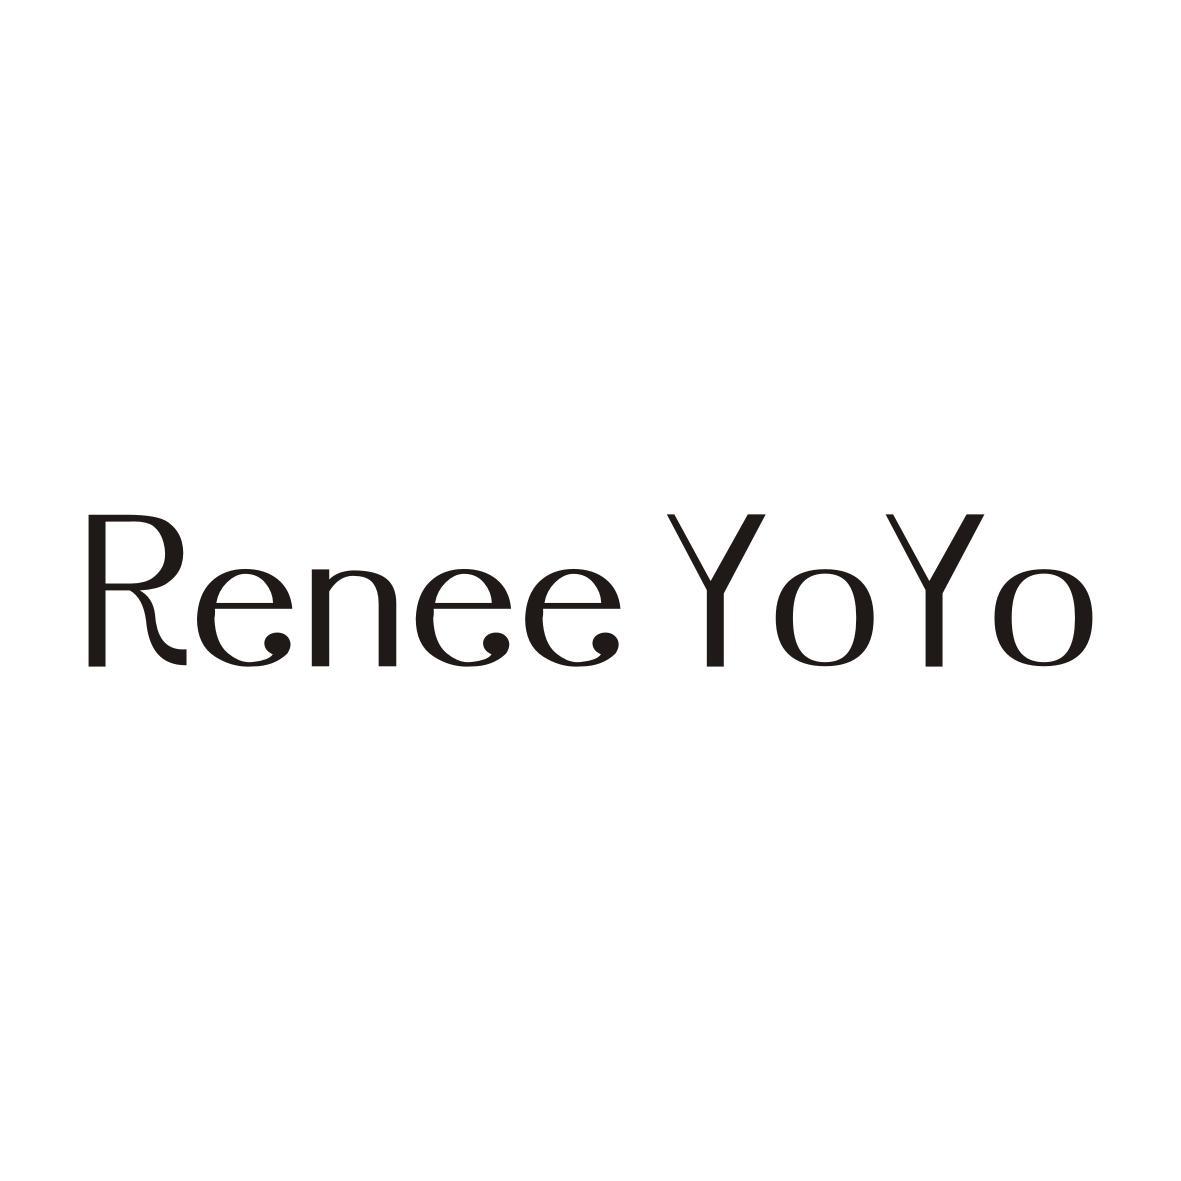 RENEE YOYO